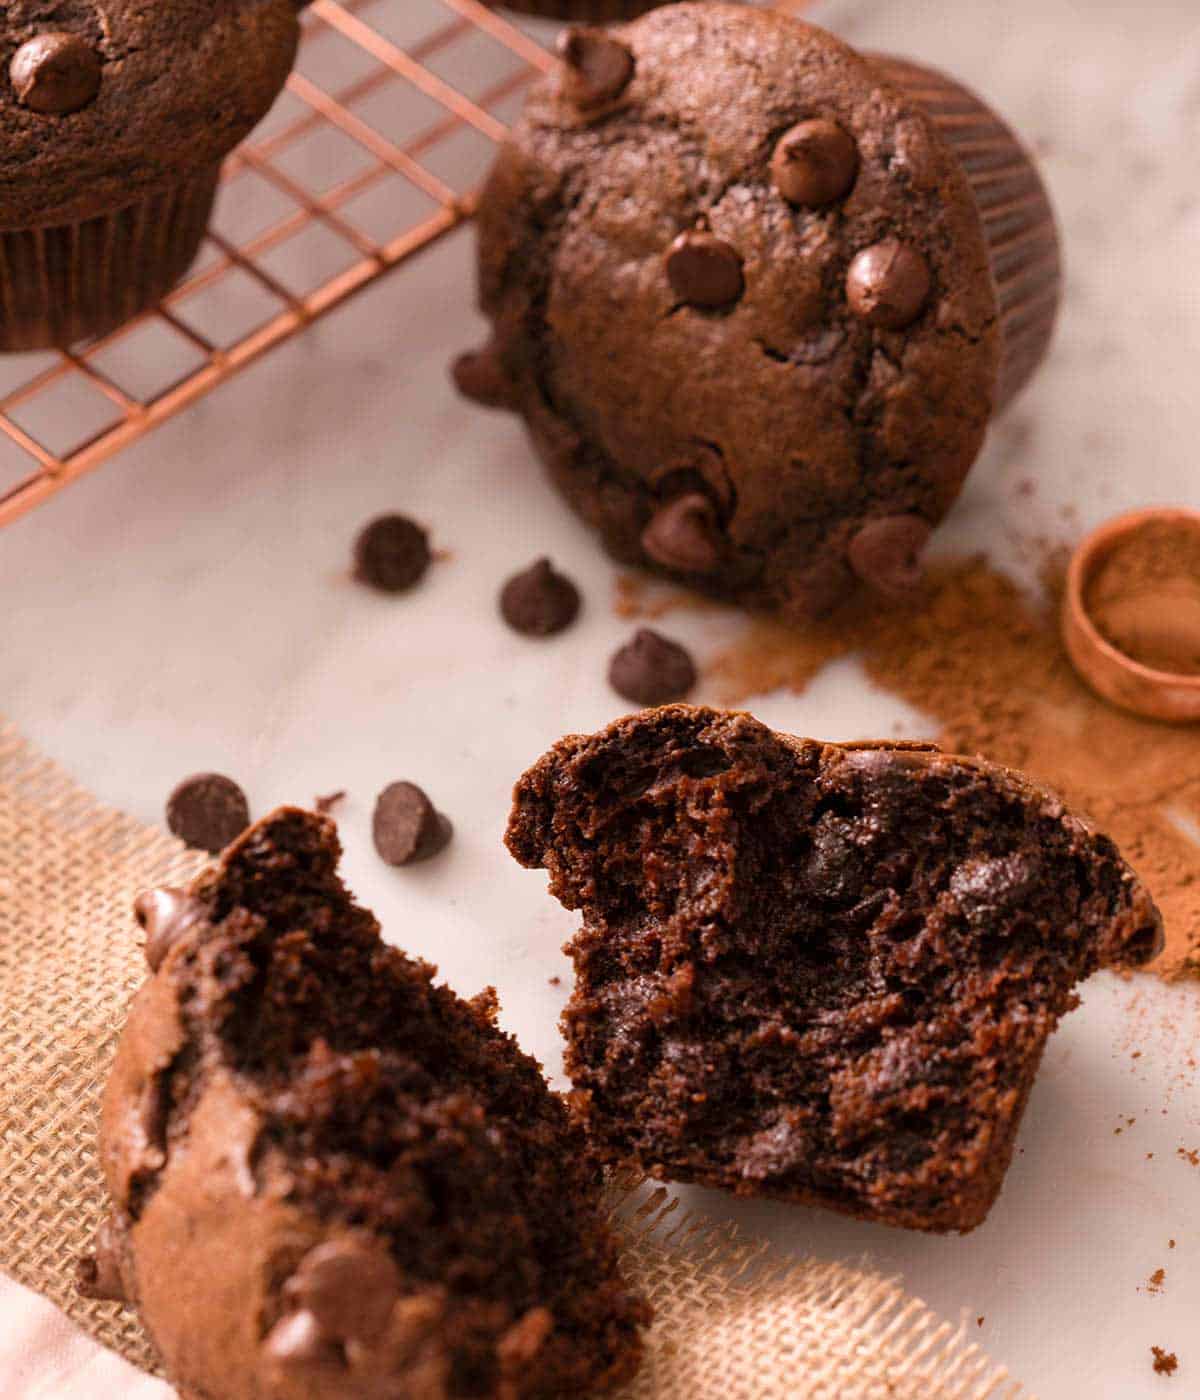 A chocolate muffins cut in half